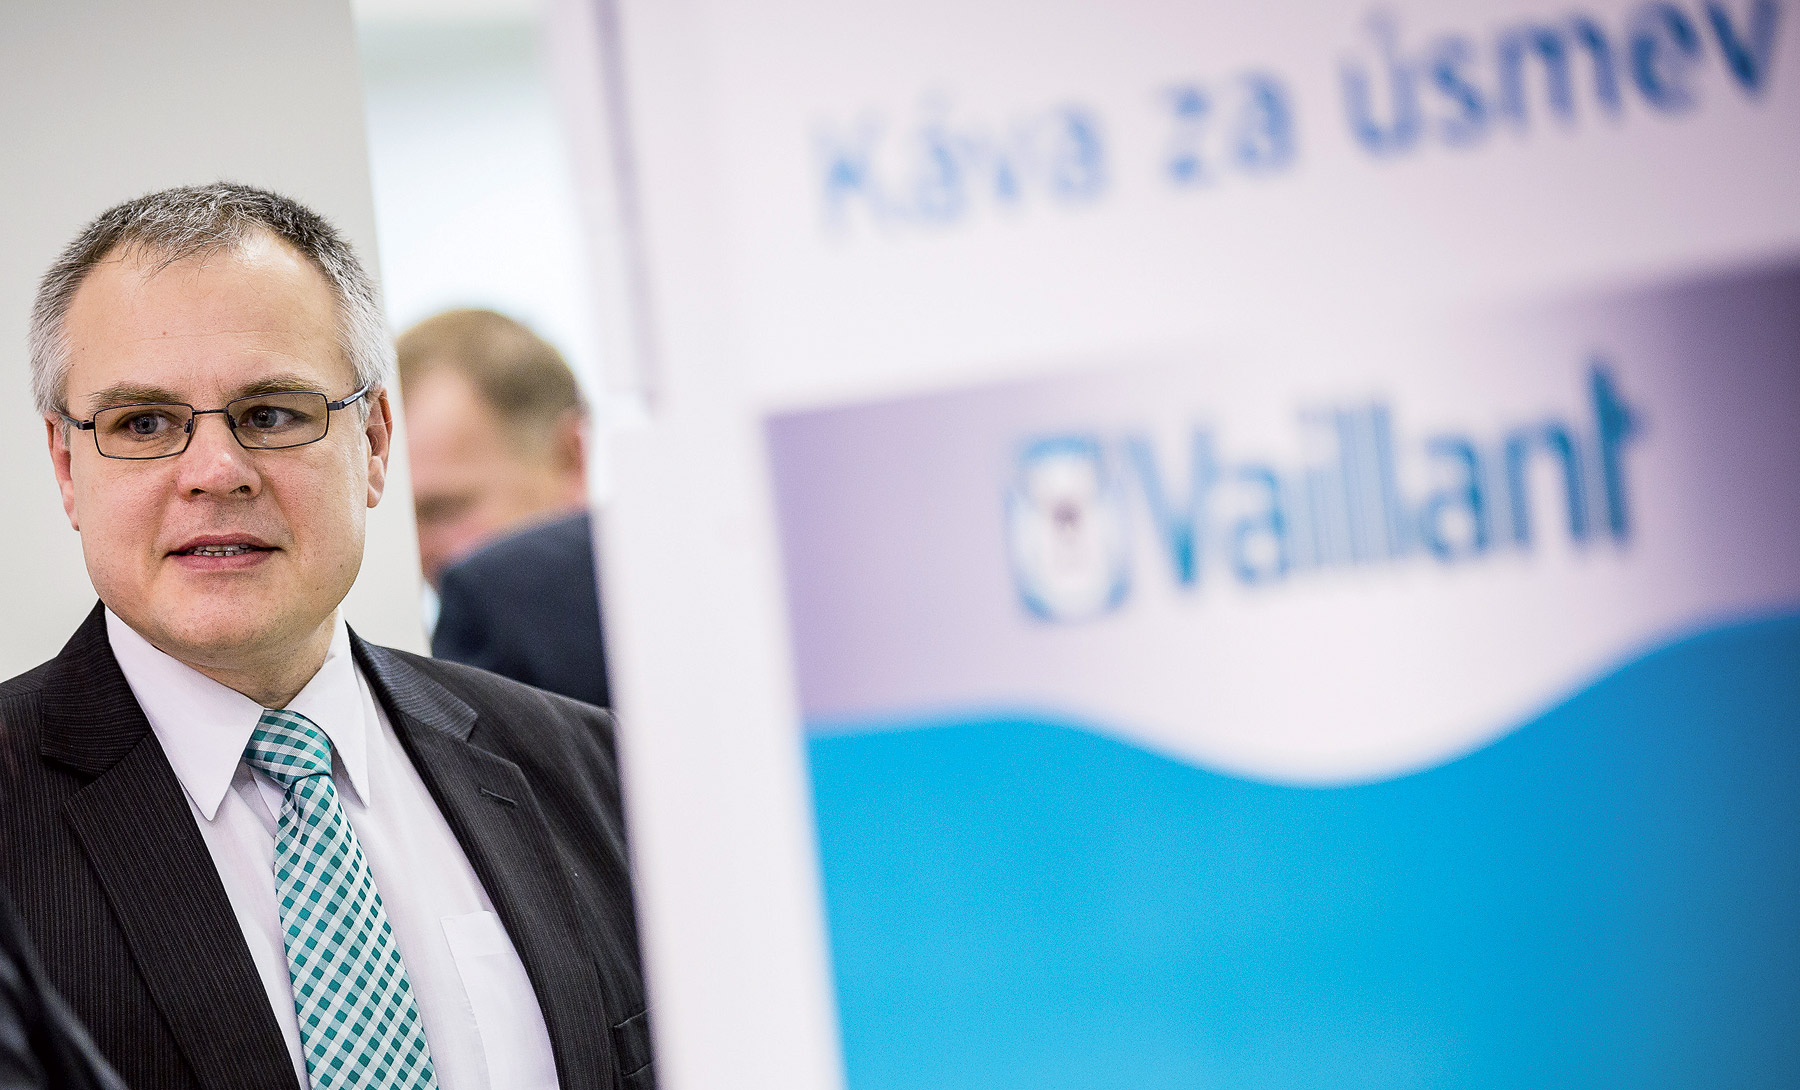 Jaroslav Rehuš technický špecialista spoločnosti Vaillant Group Slovakia